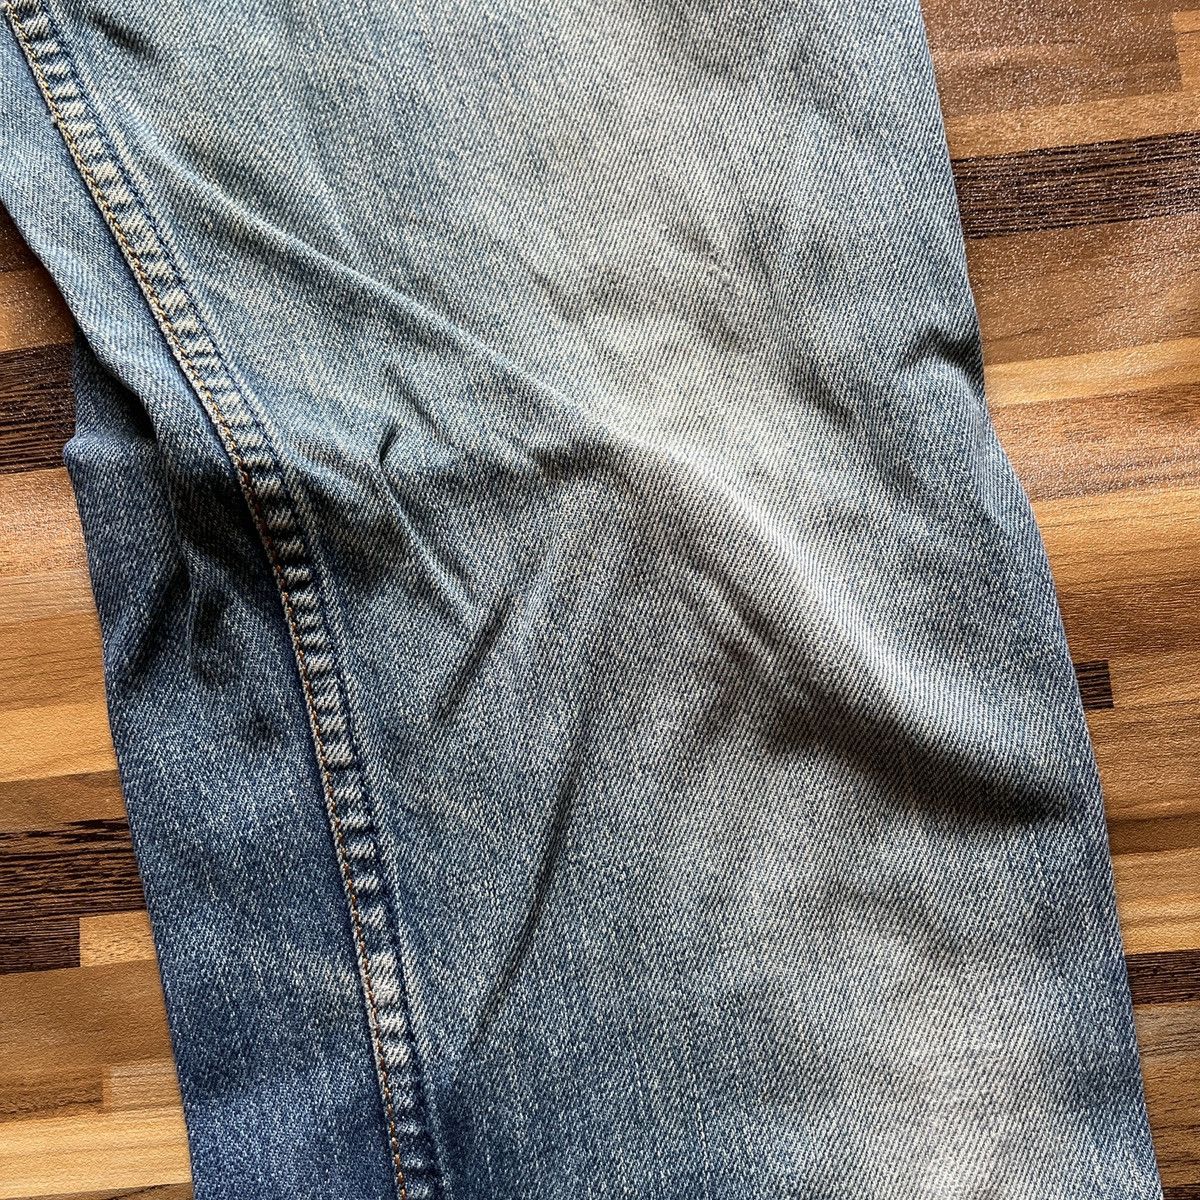 Vintage 1980s Levi's 603 Denim Jeans Straight Cut - 8